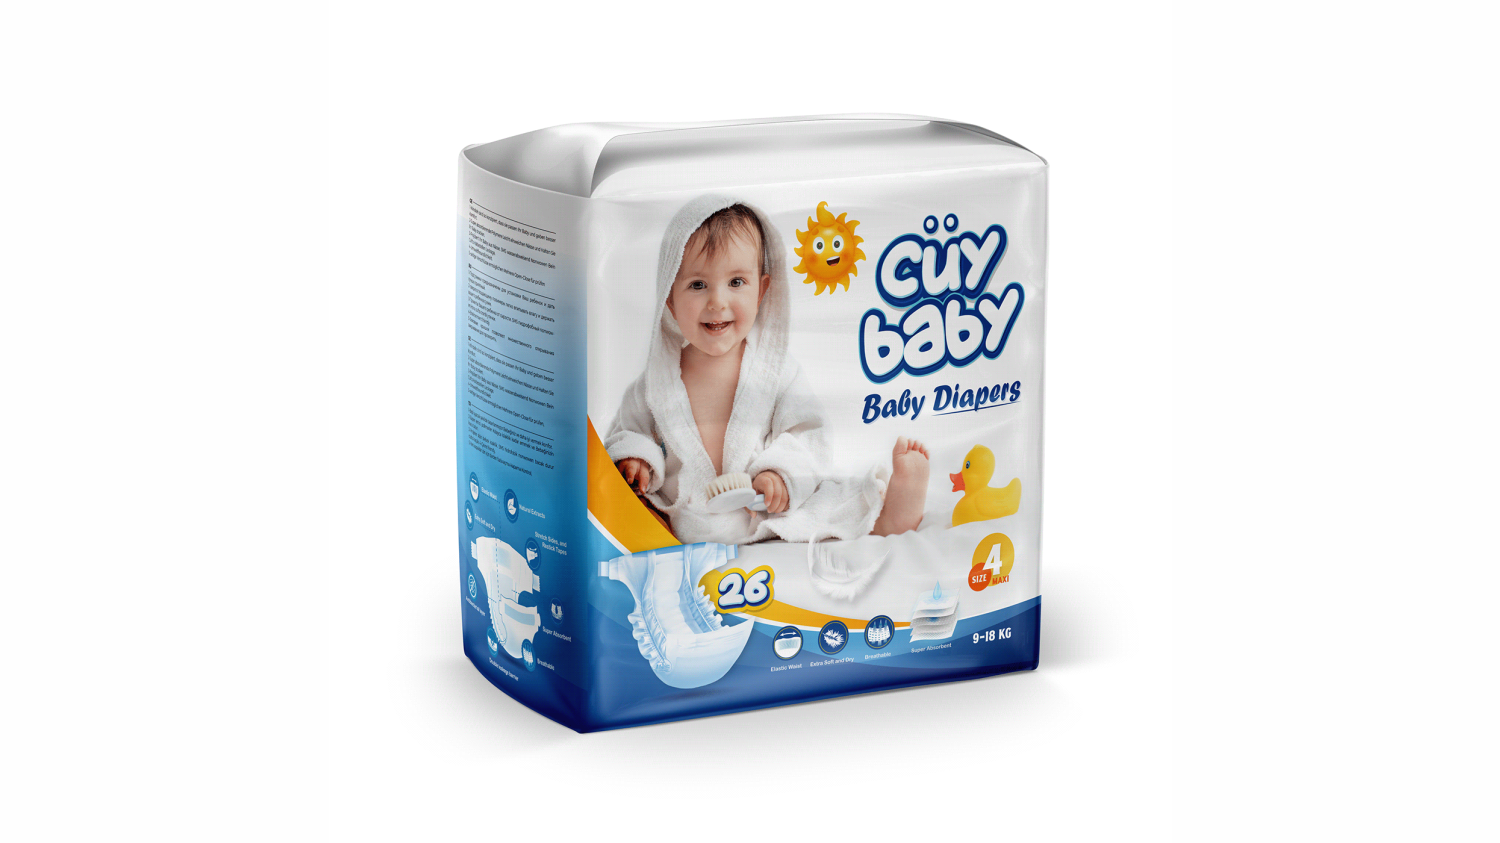 Baby & Adult Diaper Packagings2